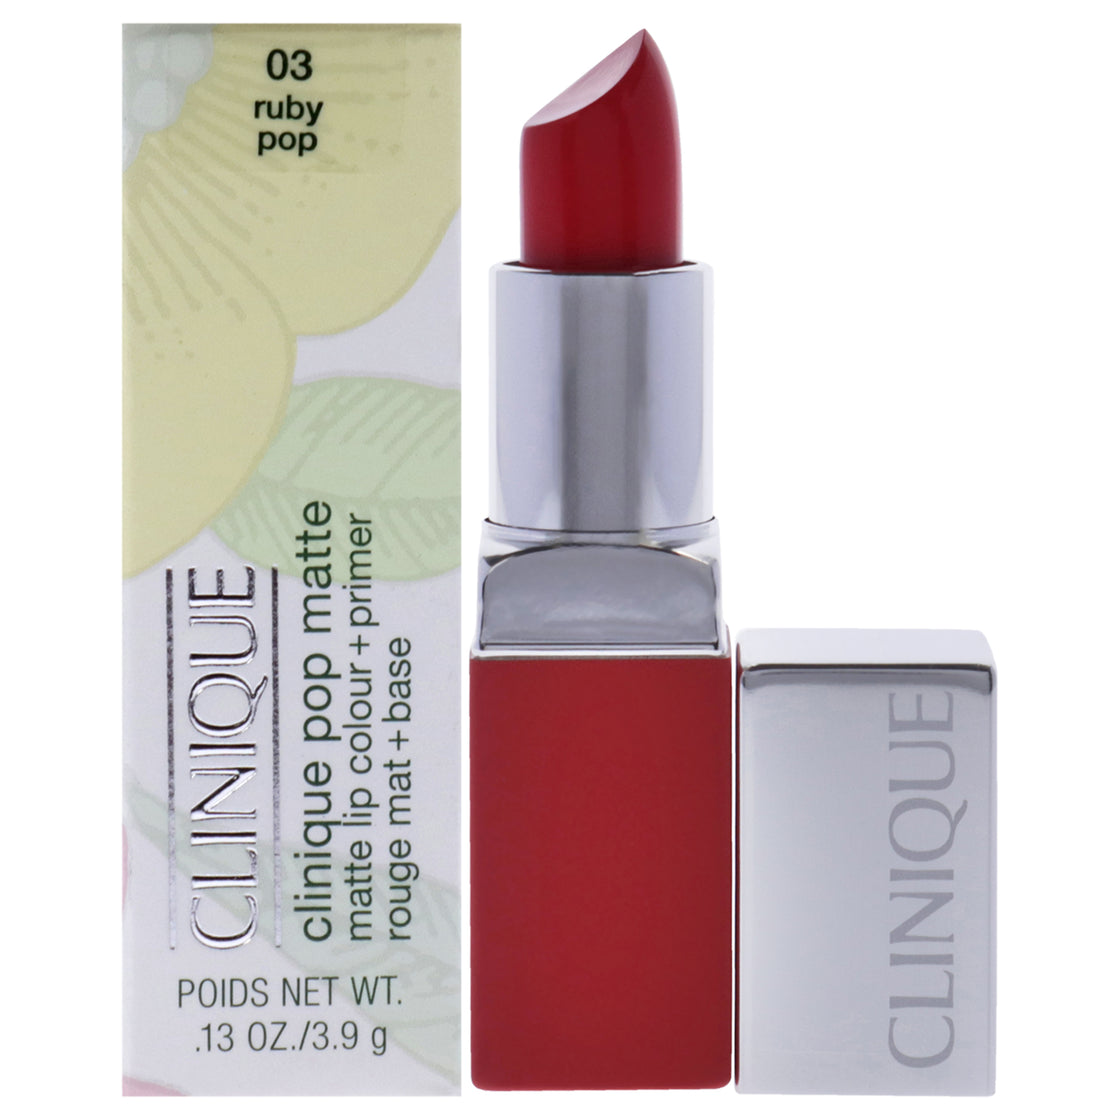 Clinique Pop Matte Lip Colour Plus Primer - 03 Ruby Pop by Clinique for Women - 0.13 oz Lipstick